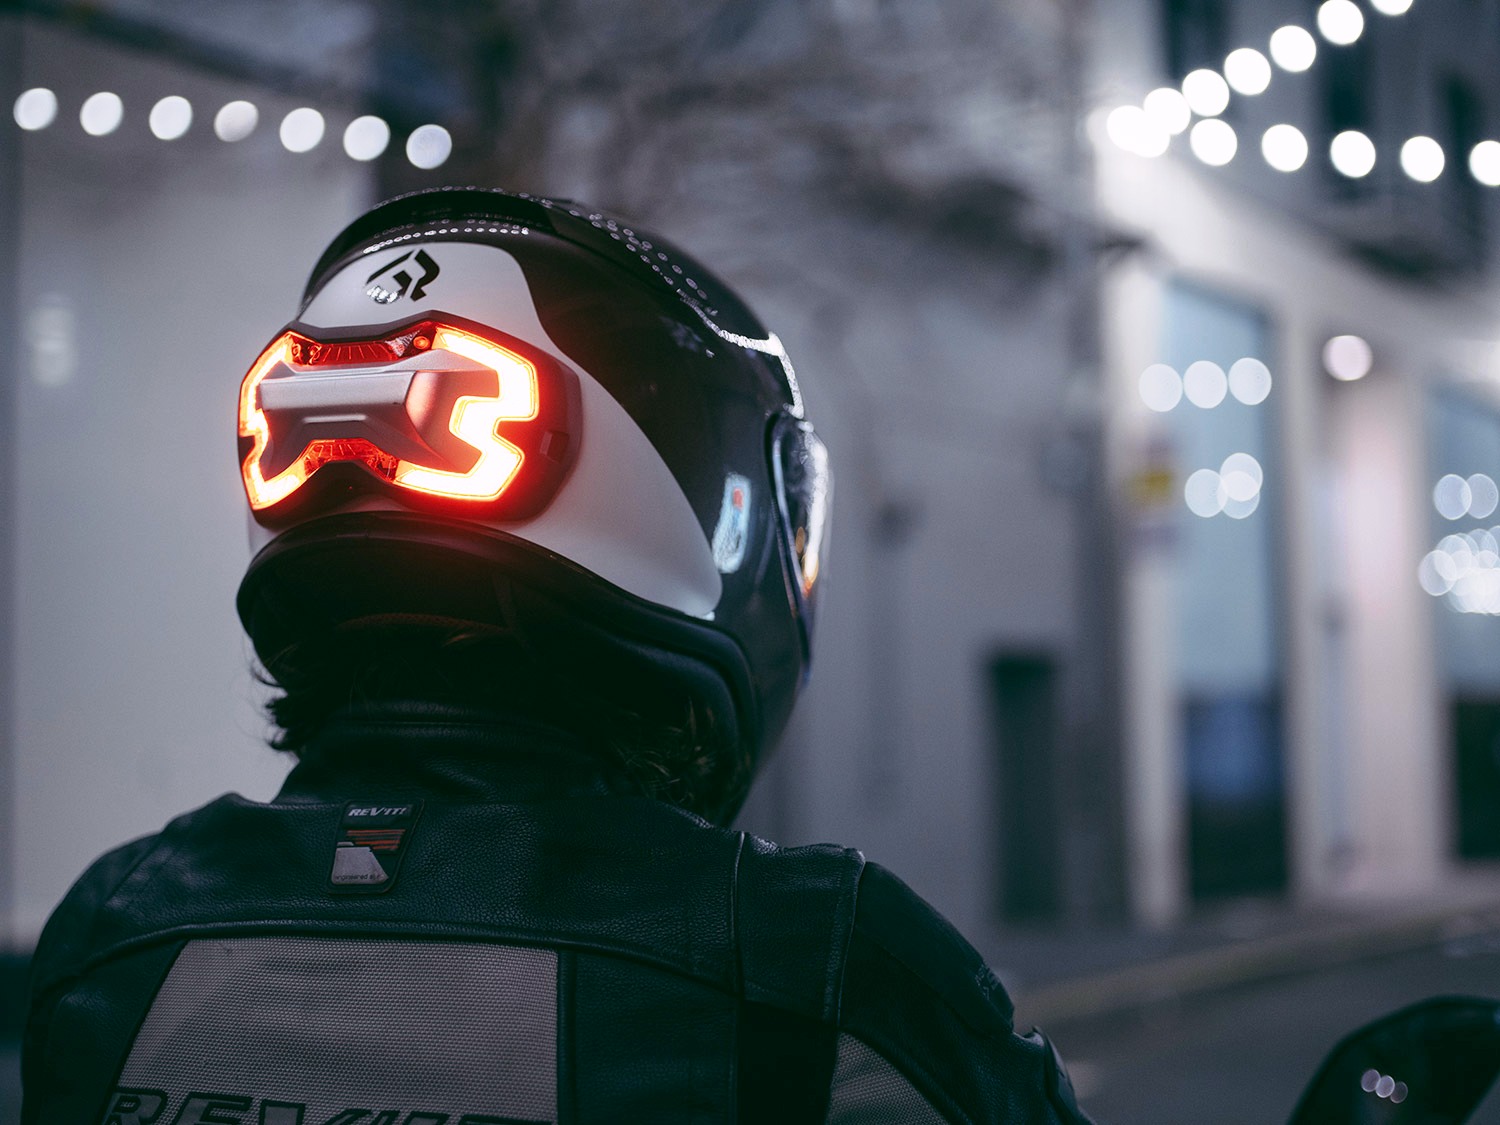 Accesorios moteros: cascos y guantes motos modernos | Territorio AMV